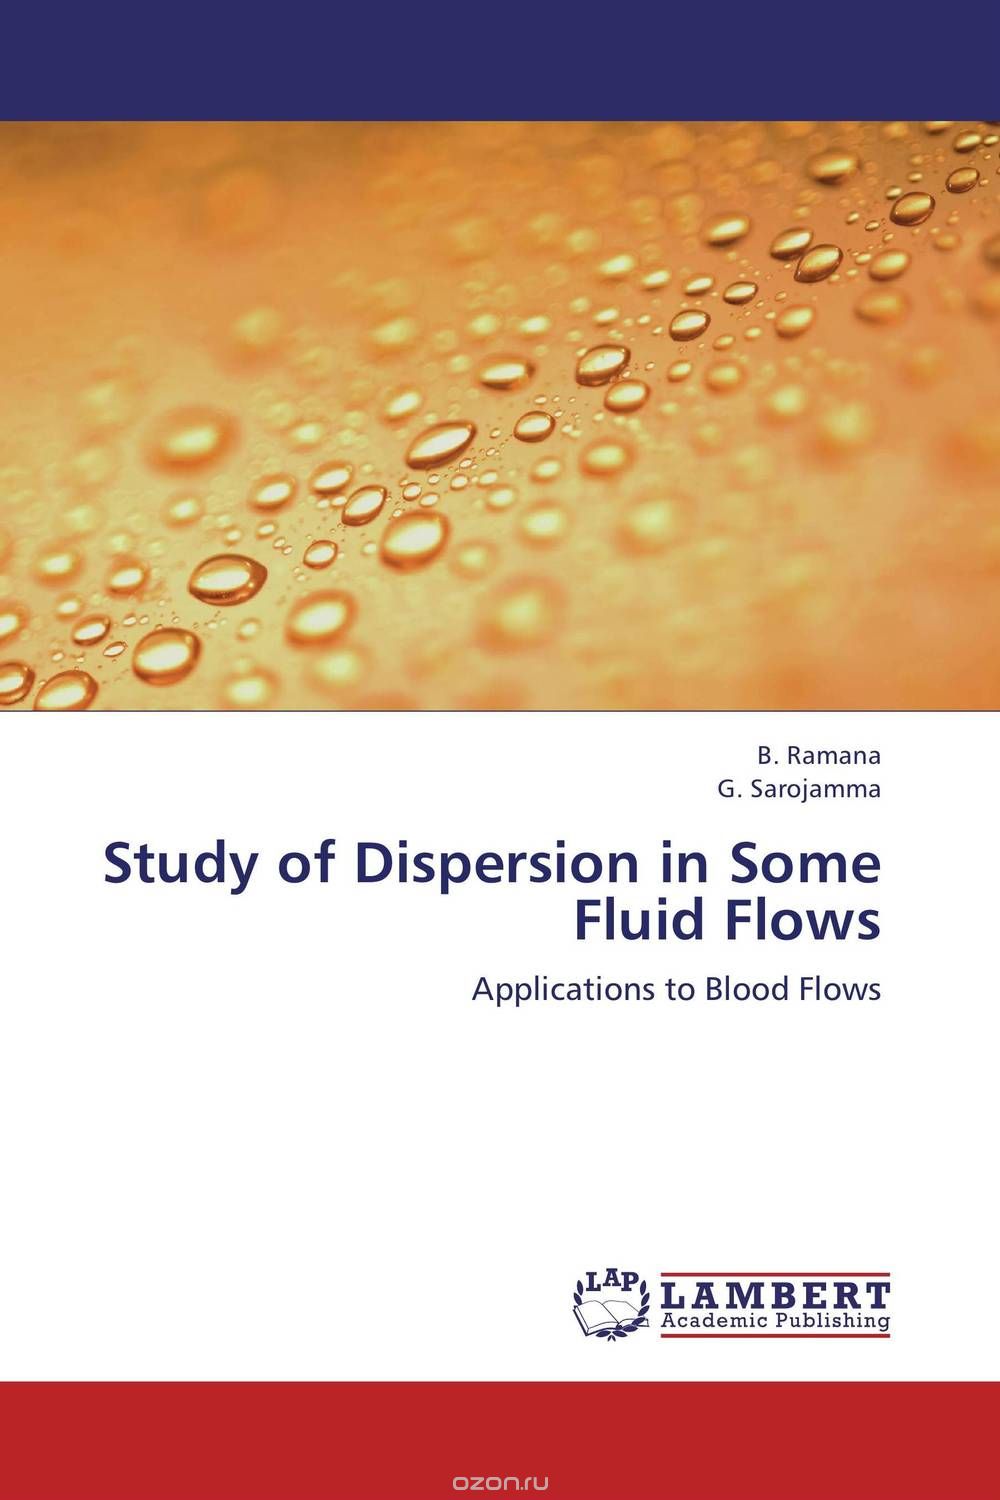 Скачать книгу "Study of Dispersion in Some Fluid Flows"